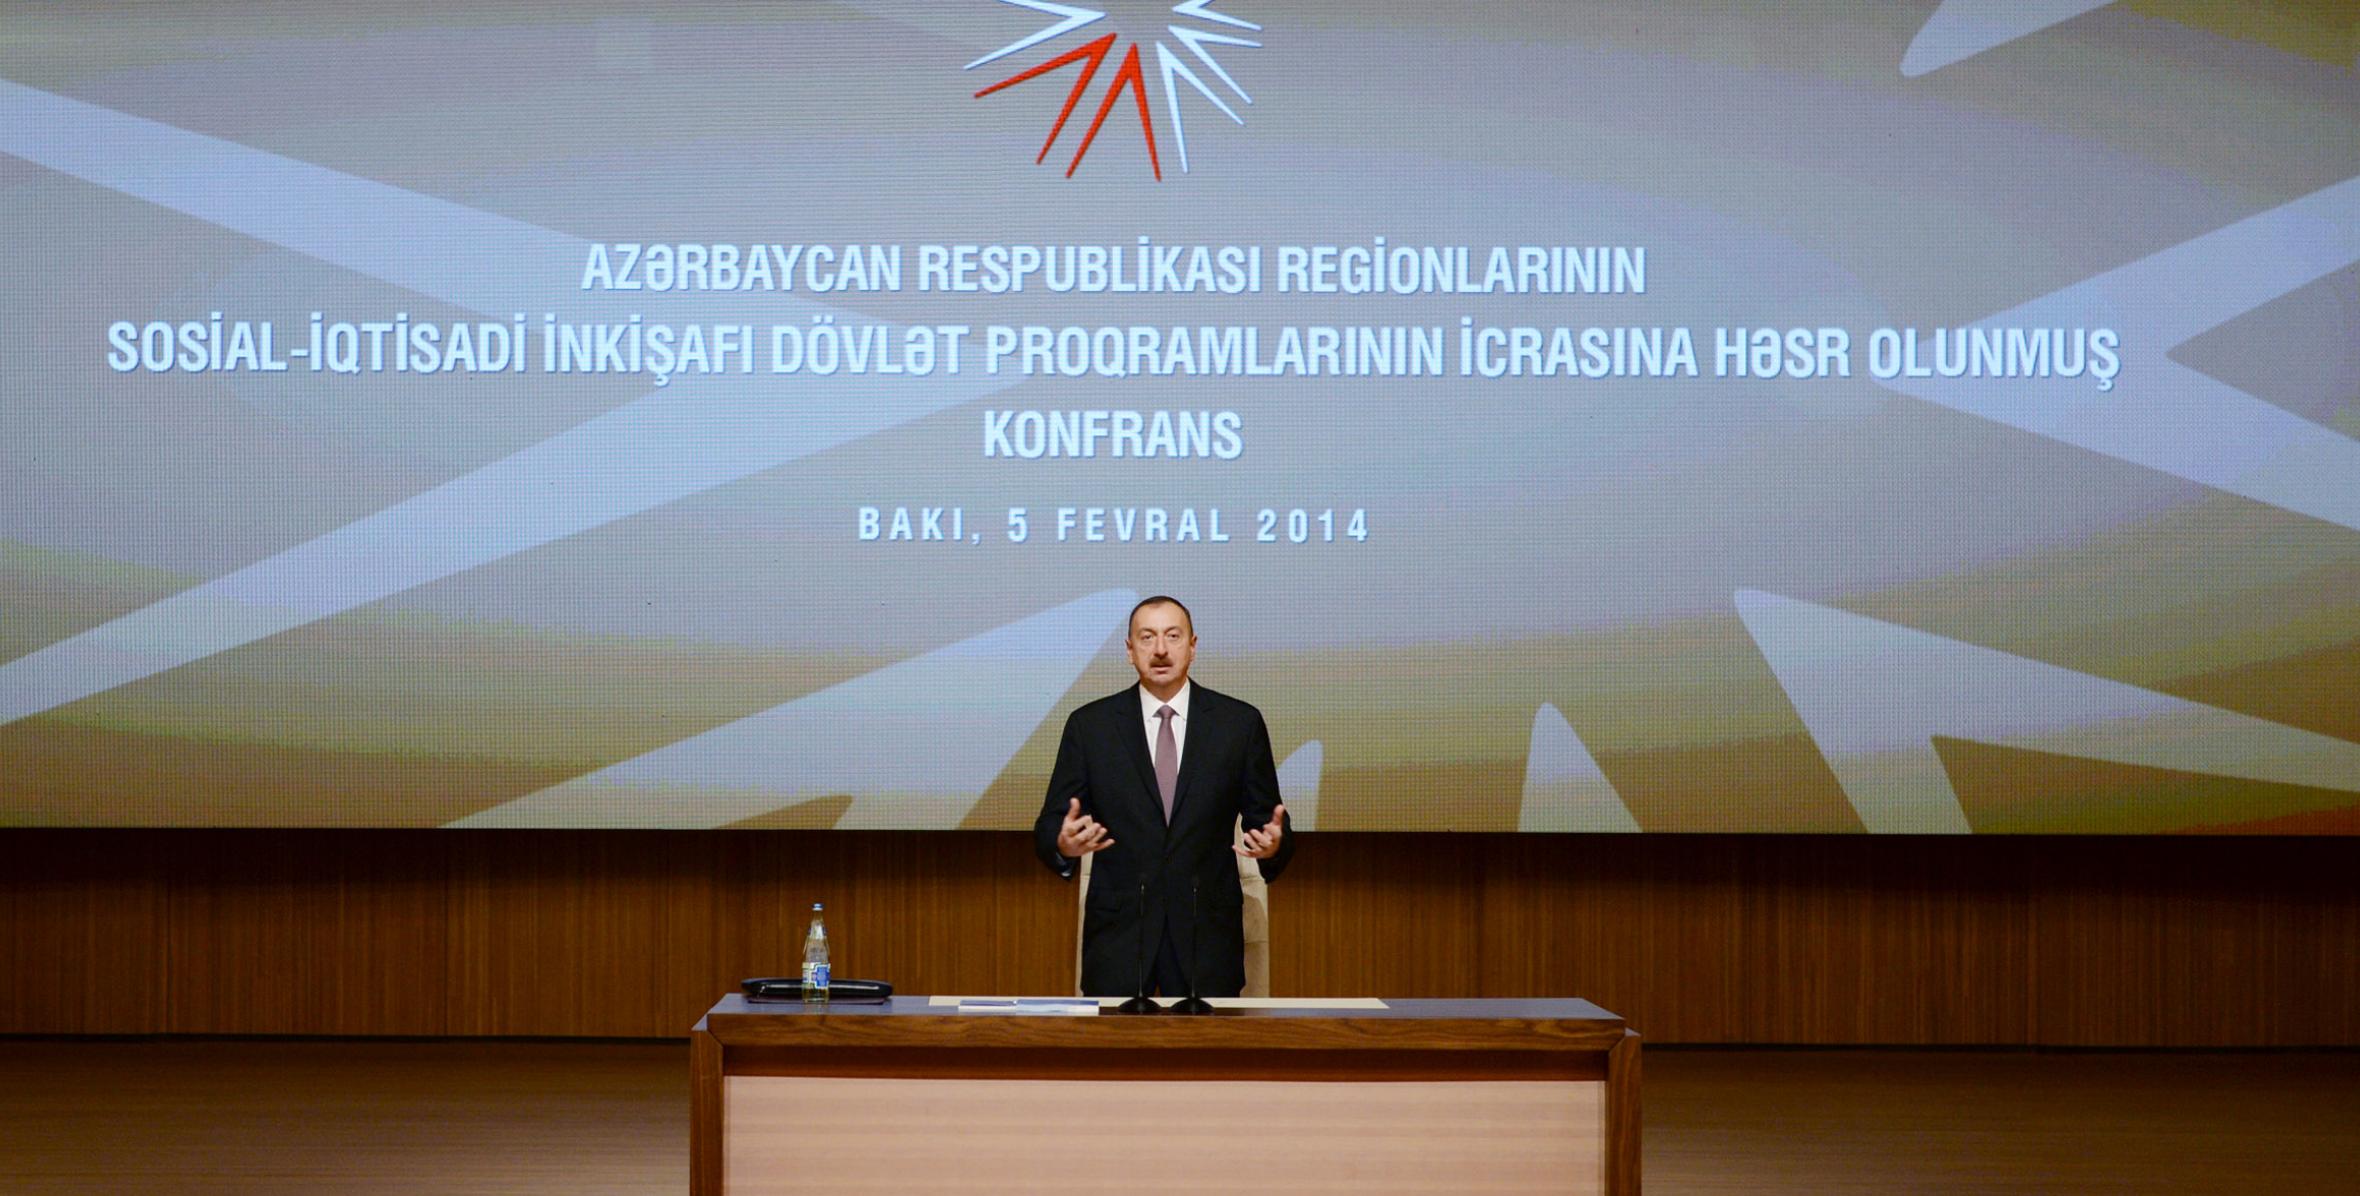 Вступительная речь Ильхама Алиева на конференции, посвященной реализации государственных программ социально-экономического развития регионов Азербайджанской Республики